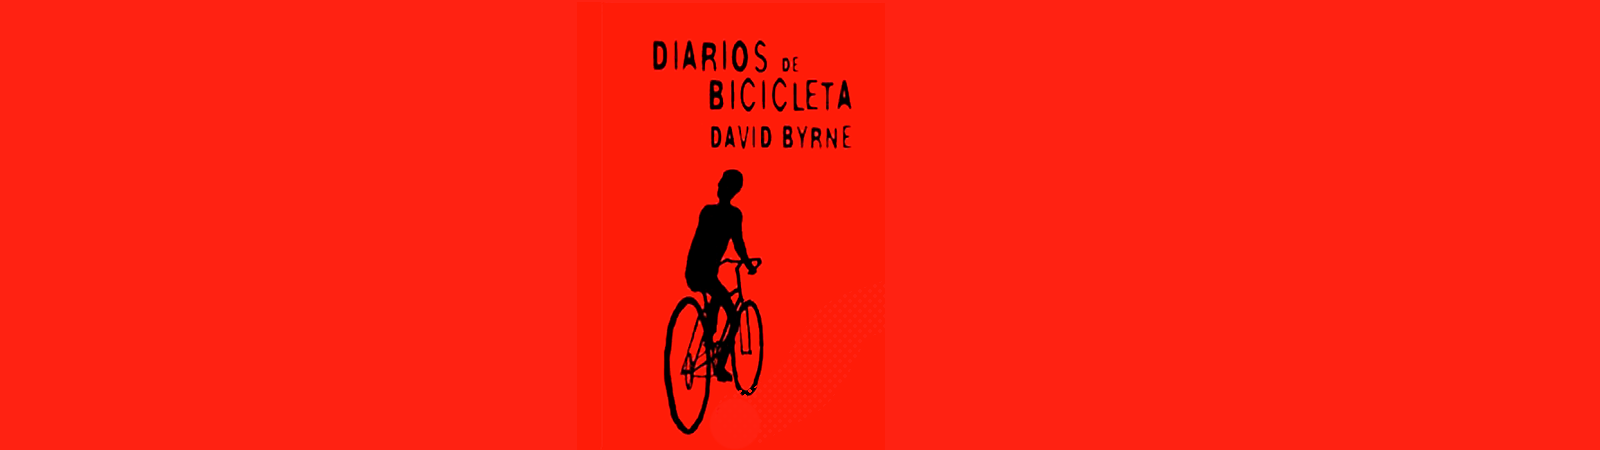 Diarios de bicicleta – David Byrne